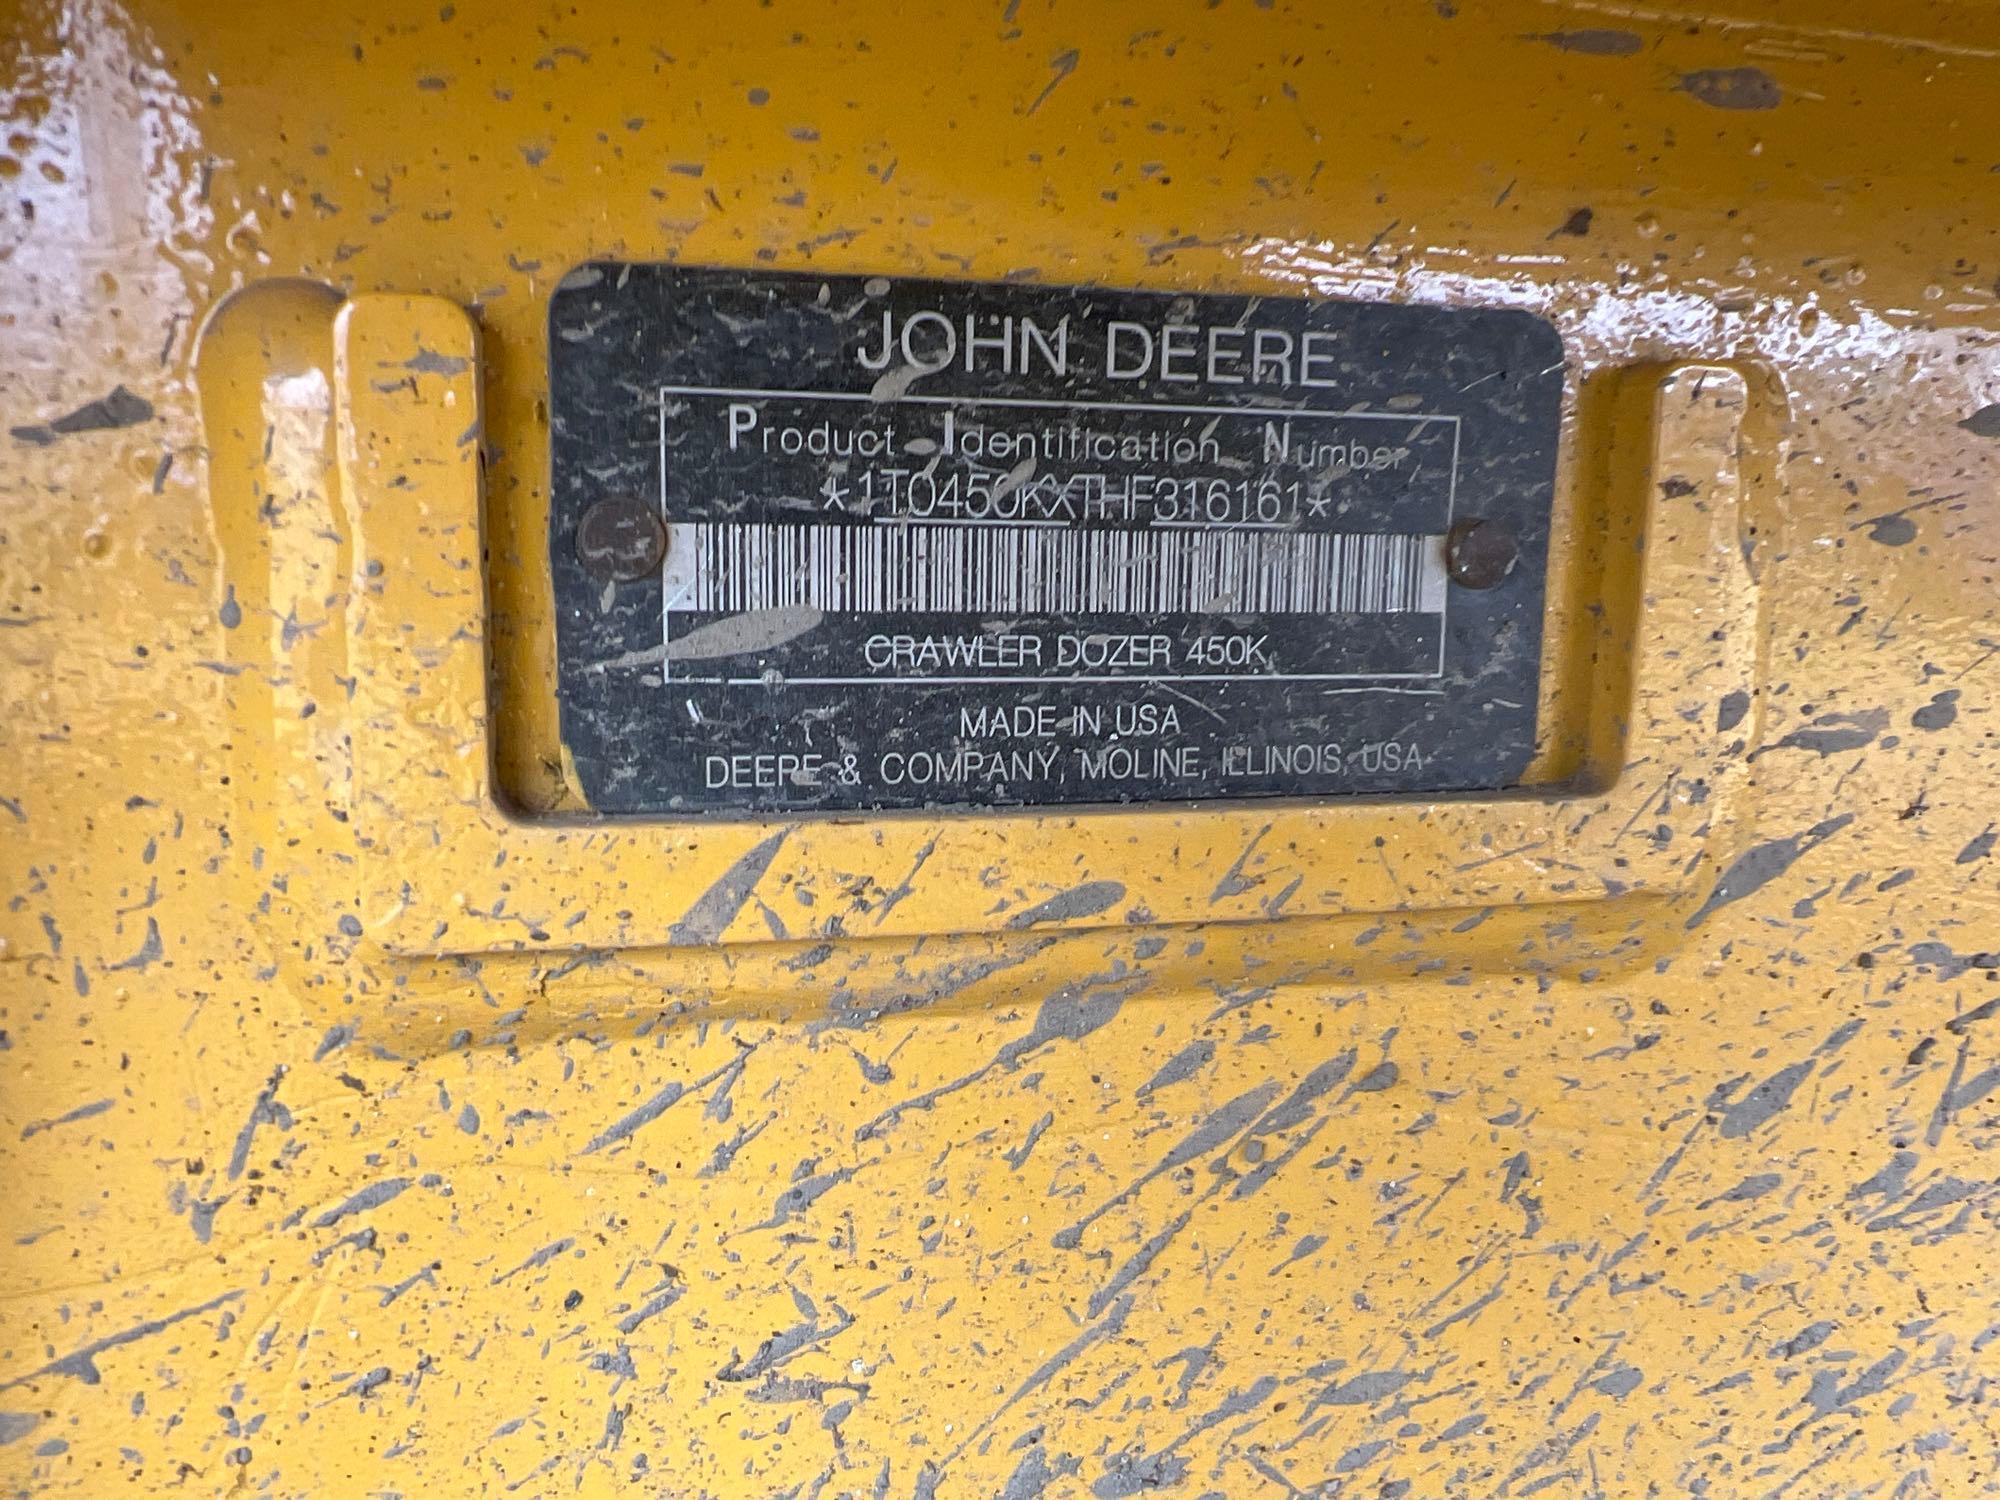 2017 JOHN DEERE 450KLGP CRAWLER TRACTOR SN:316161 powered by John Deere diesel engine, equipped with